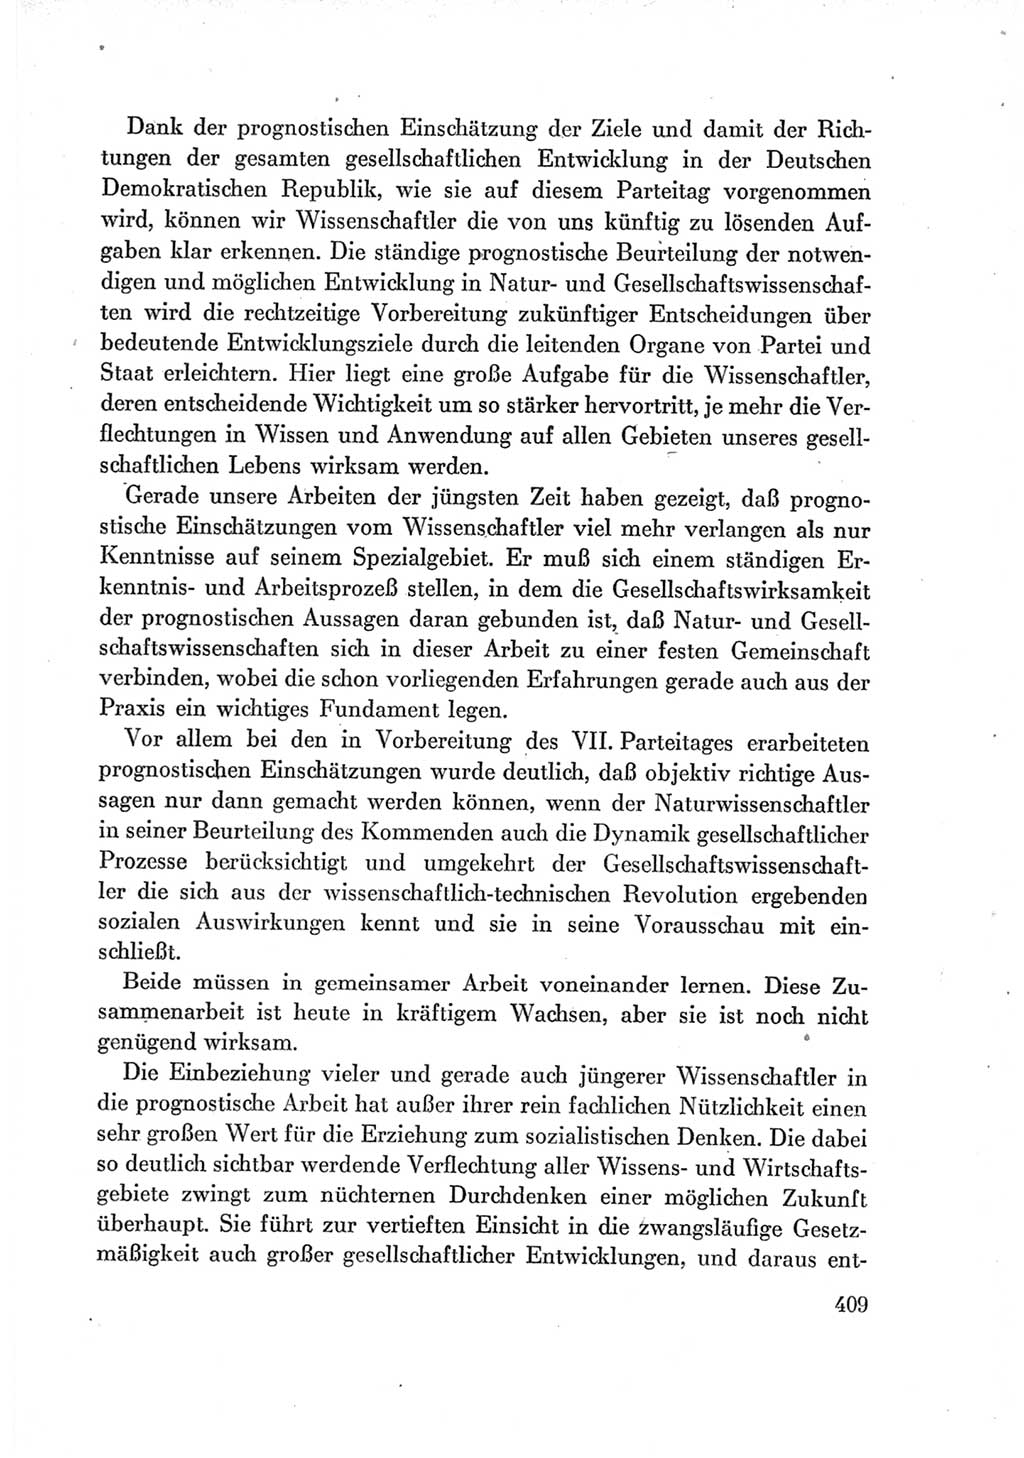 Protokoll der Verhandlungen des Ⅶ. Parteitages der Sozialistischen Einheitspartei Deutschlands (SED) [Deutsche Demokratische Republik (DDR)] 1967, Band Ⅰ, Seite 409 (Prot. Verh. Ⅶ. PT SED DDR 1967, Bd. Ⅰ, S. 409)